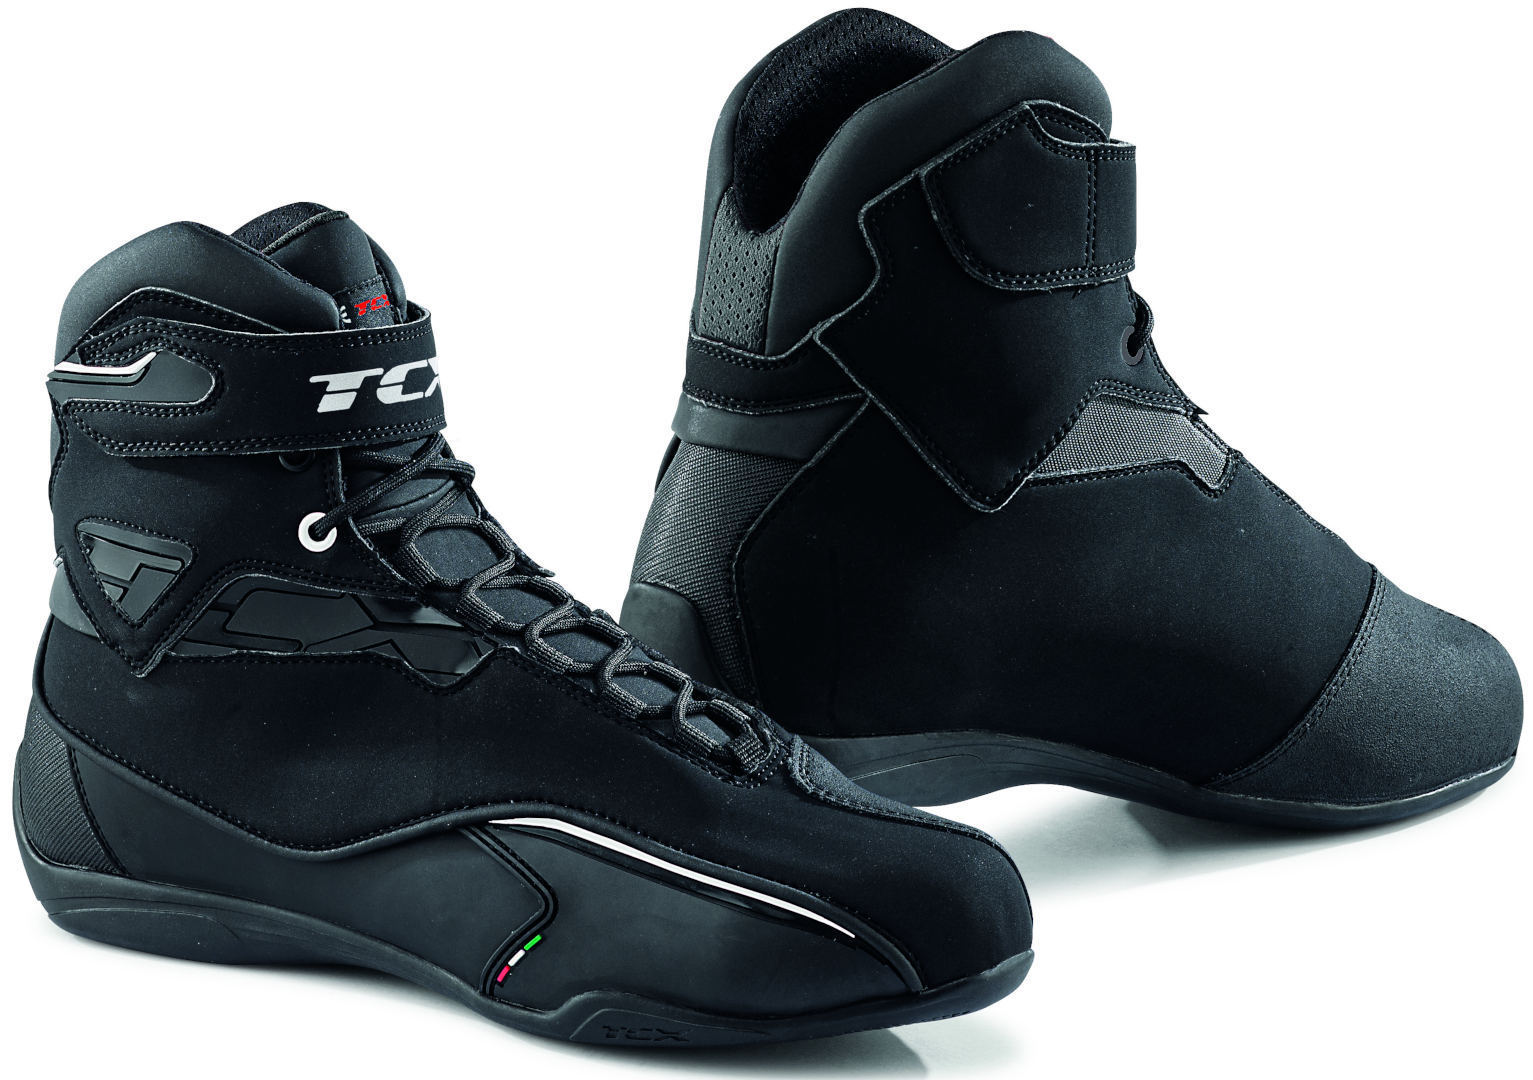 Обувь водонепроницаемая TCX Zeta мотоциклетная, черный водонепроницаемая мотоциклетная обувь g rome gtx gaerne черный